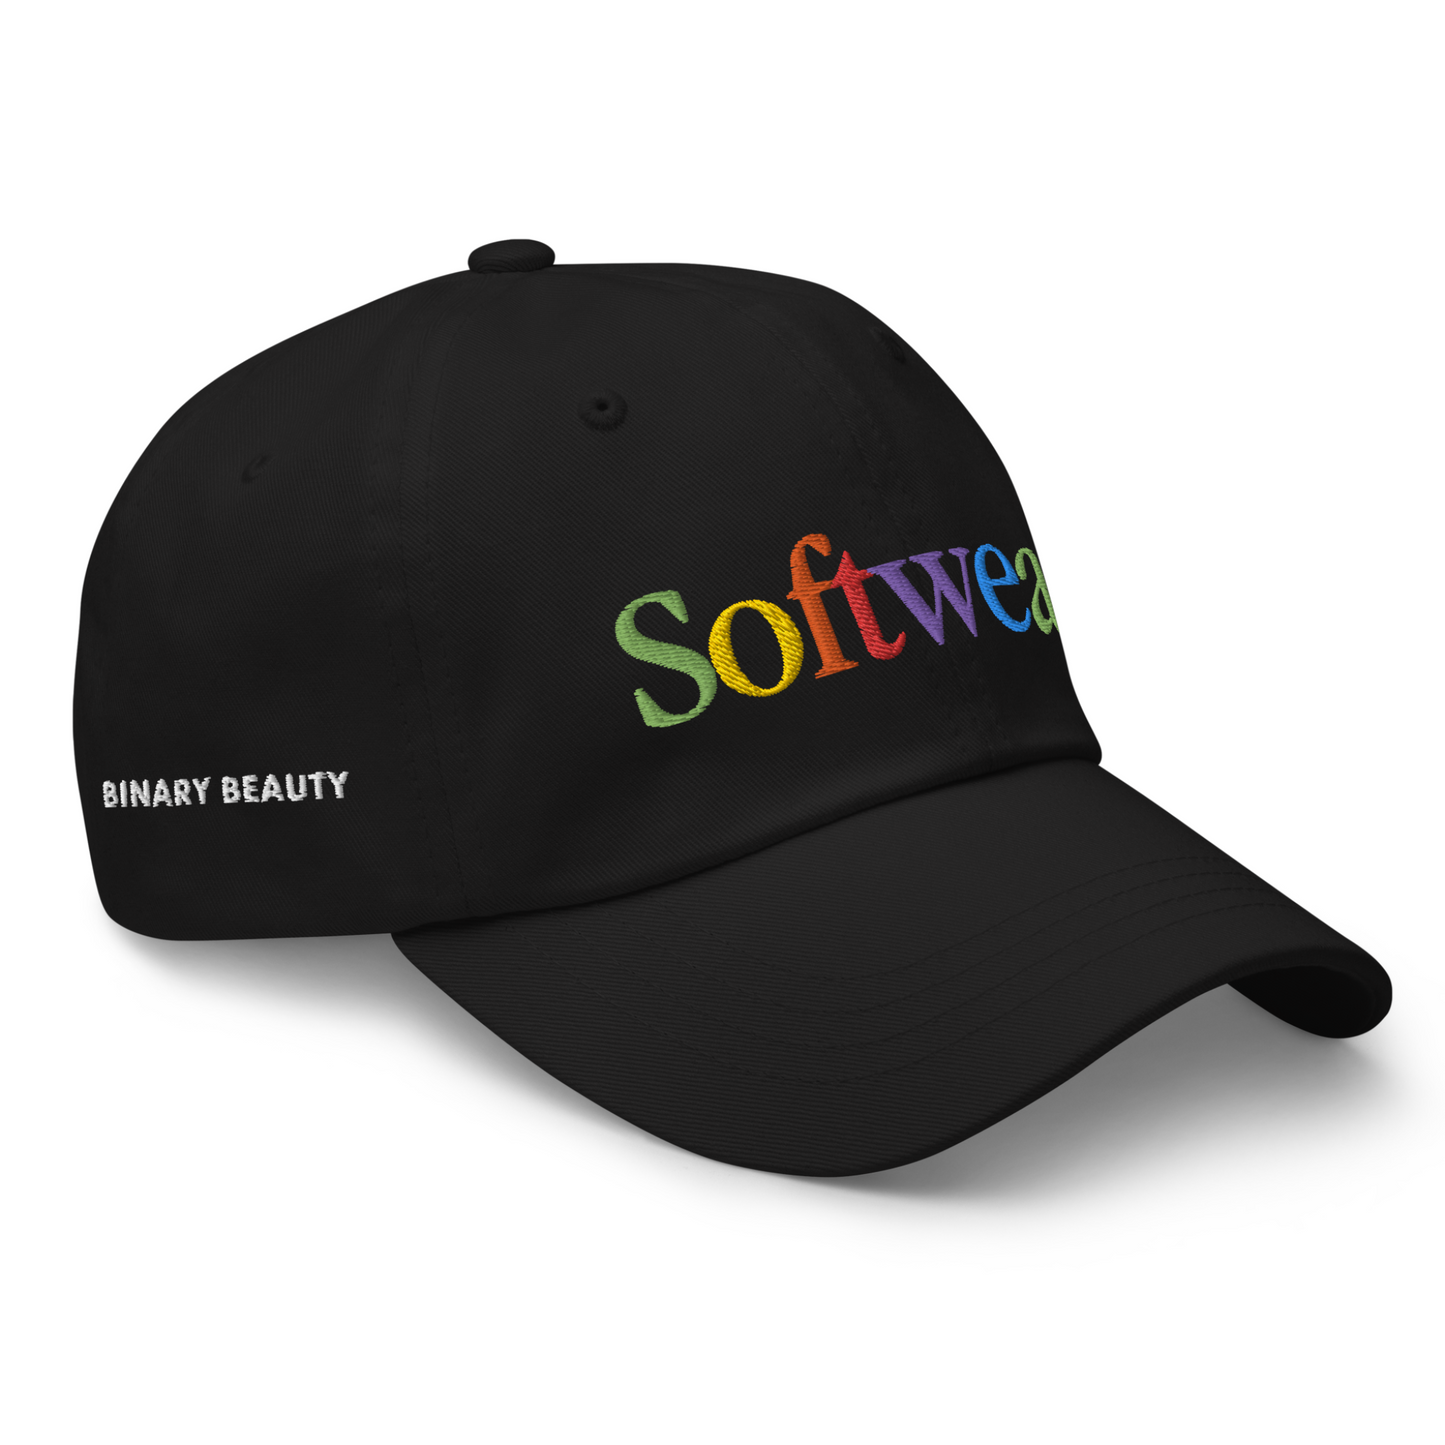 Softwear Apple x Pride Hat